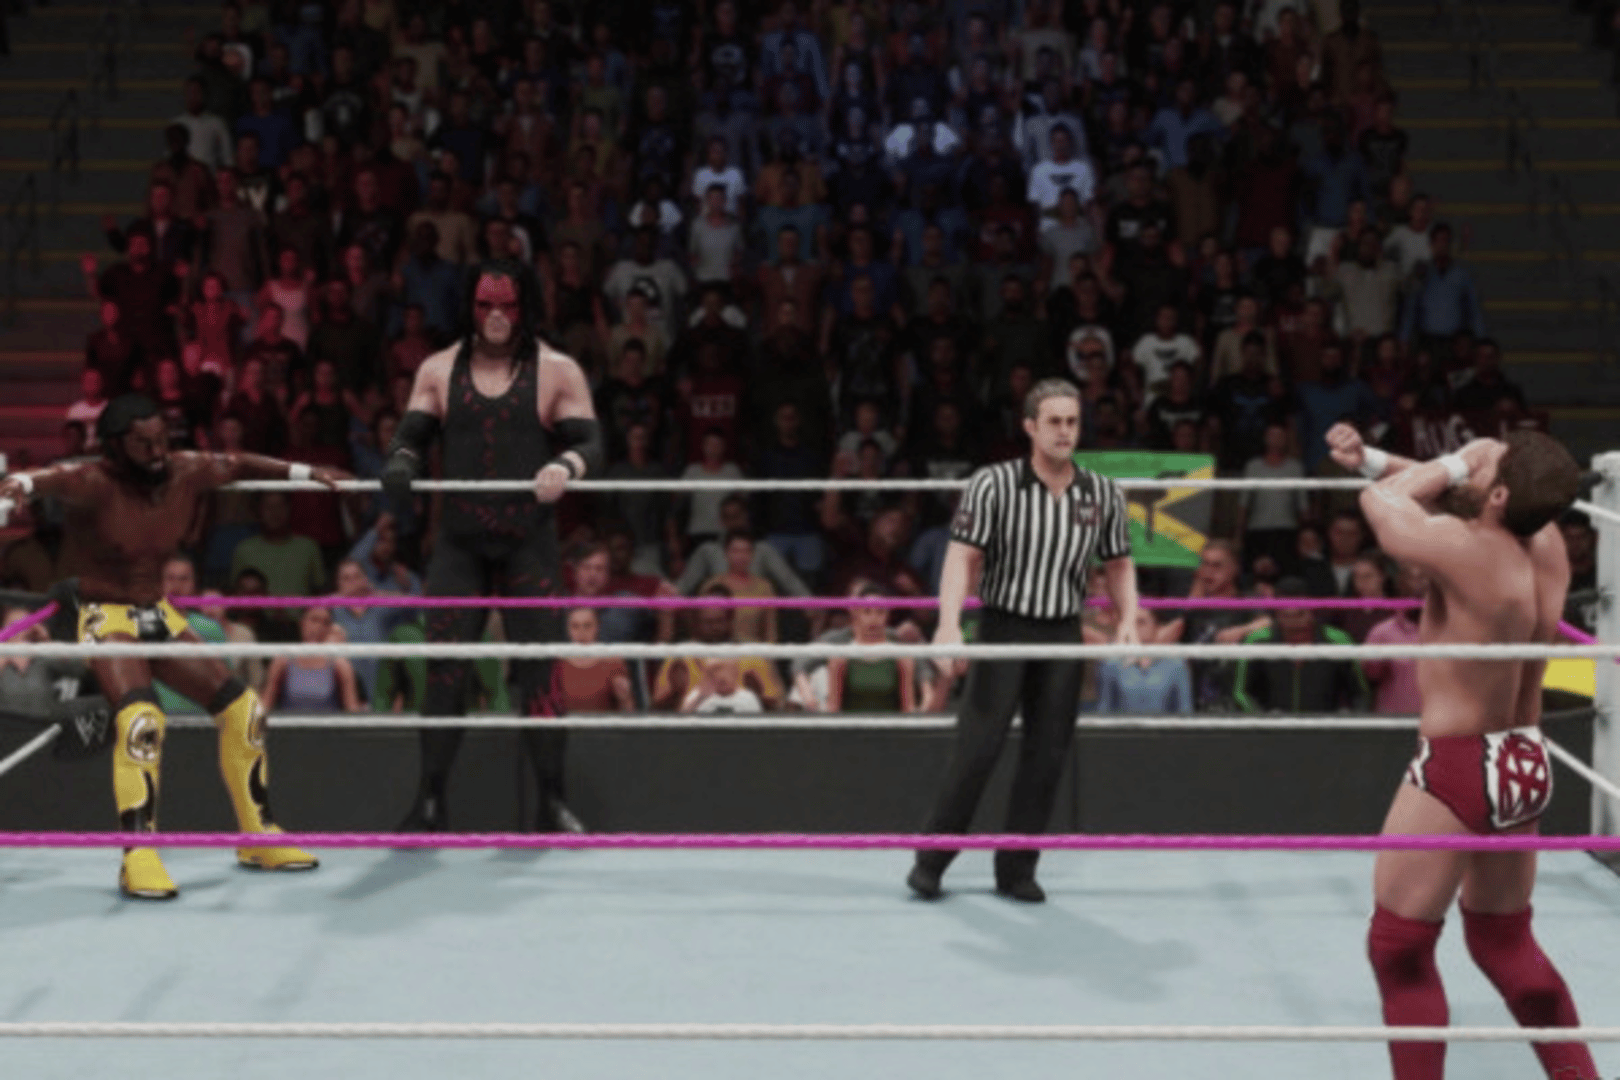 WWE 2K19 screenshot